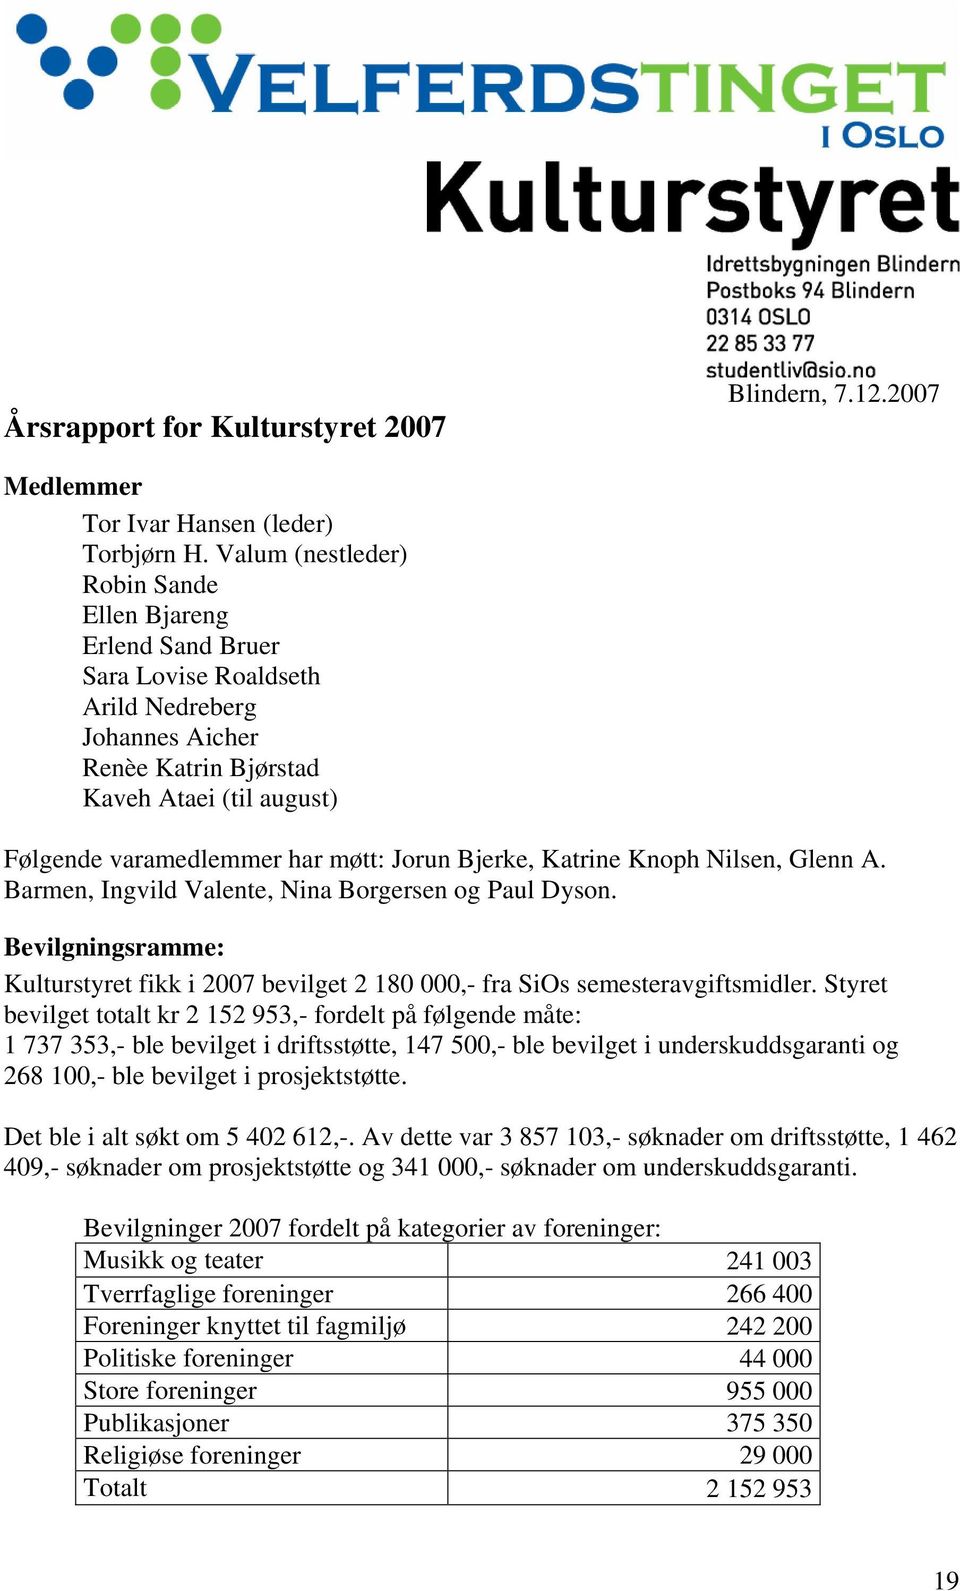 Jorun Bjerke, Katrine Knoph Nilsen, Glenn A. Barmen, Ingvild Valente, Nina Borgersen og Paul Dyson. Bevilgningsramme: Kulturstyret fikk i 2007 bevilget 2 180 000,- fra SiOs semesteravgiftsmidler.